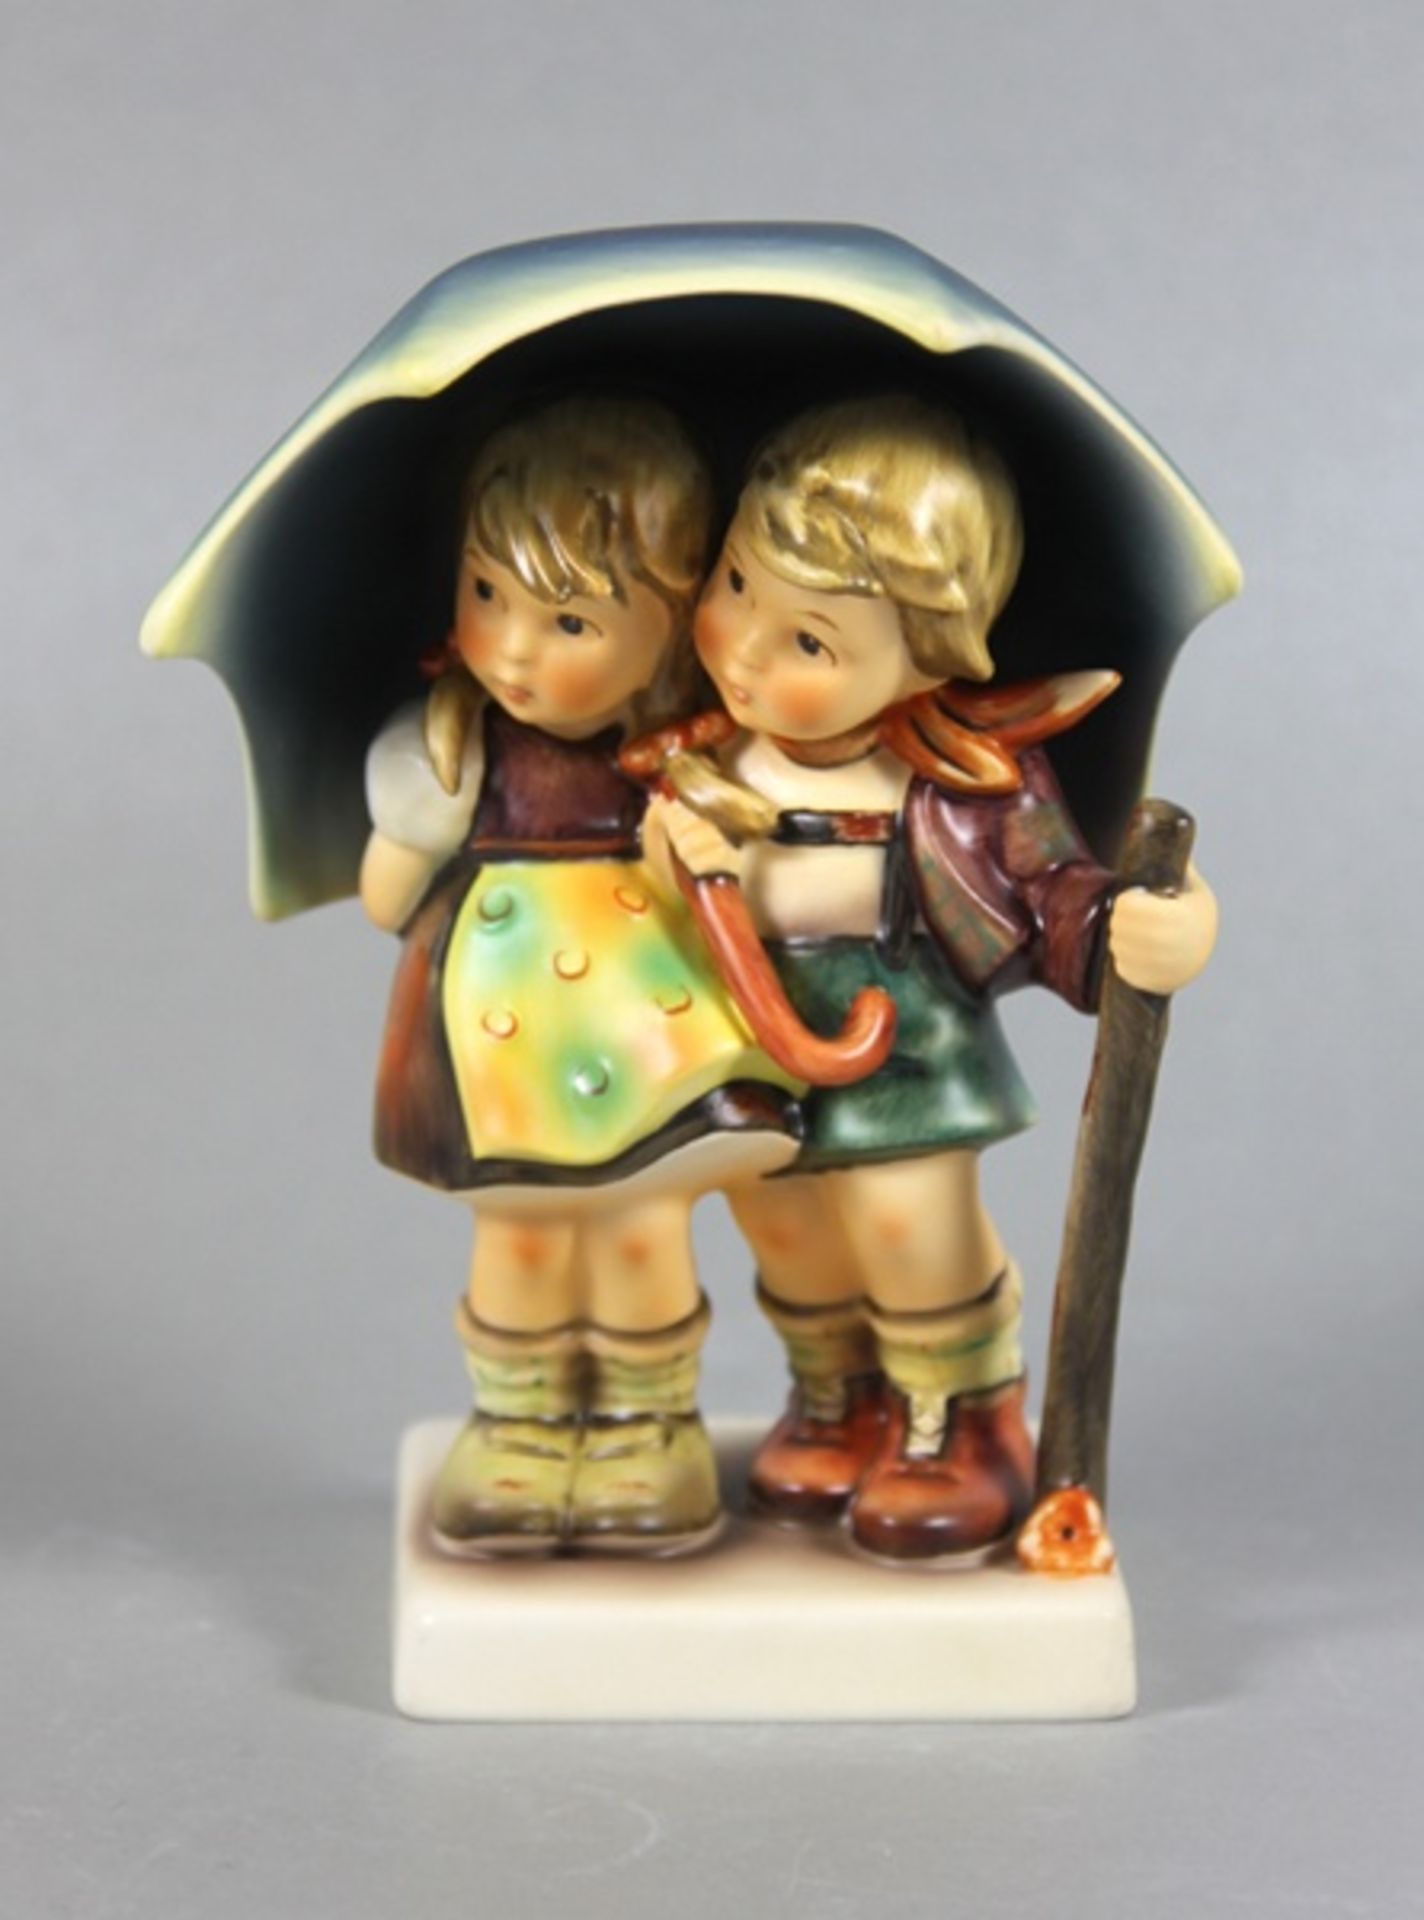 Hummel KinderfigurGoebel, Hummel, Unter einem Dach, mittelgroße Figur, 2 Kinder unter Schirm, farbig